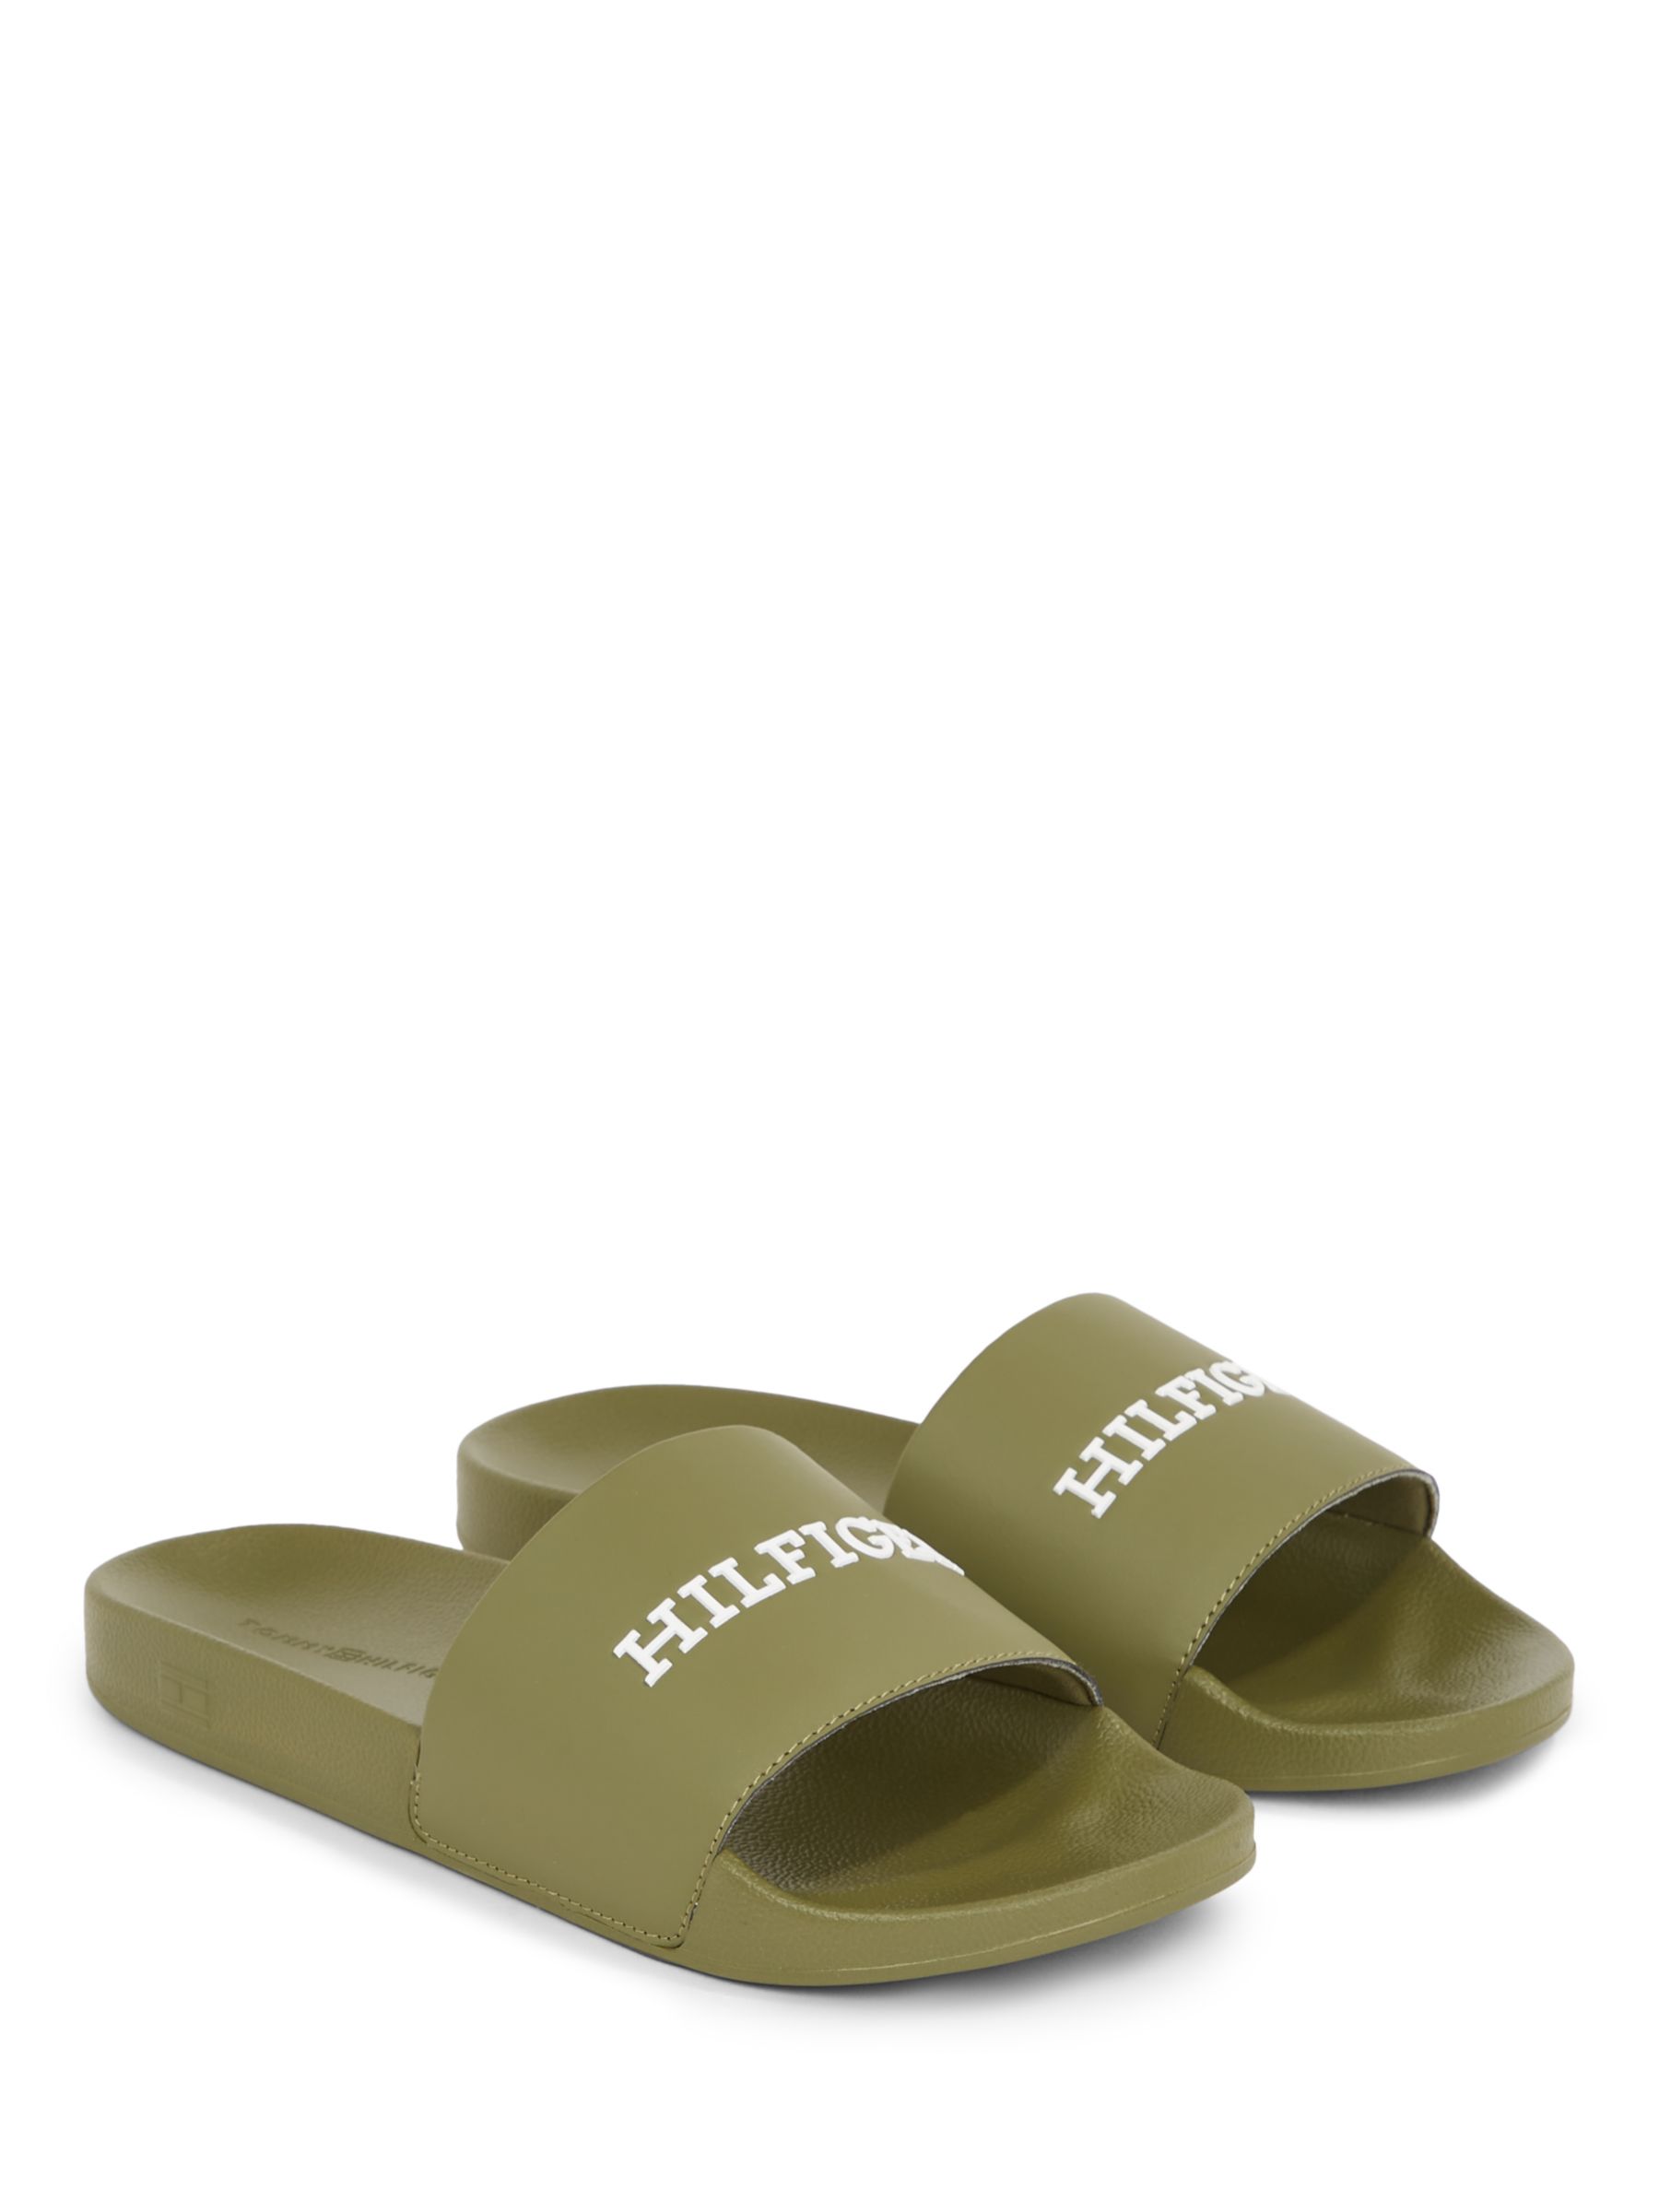 Buy Tommy Hilfiger Pool Slide Sandals Online at johnlewis.com